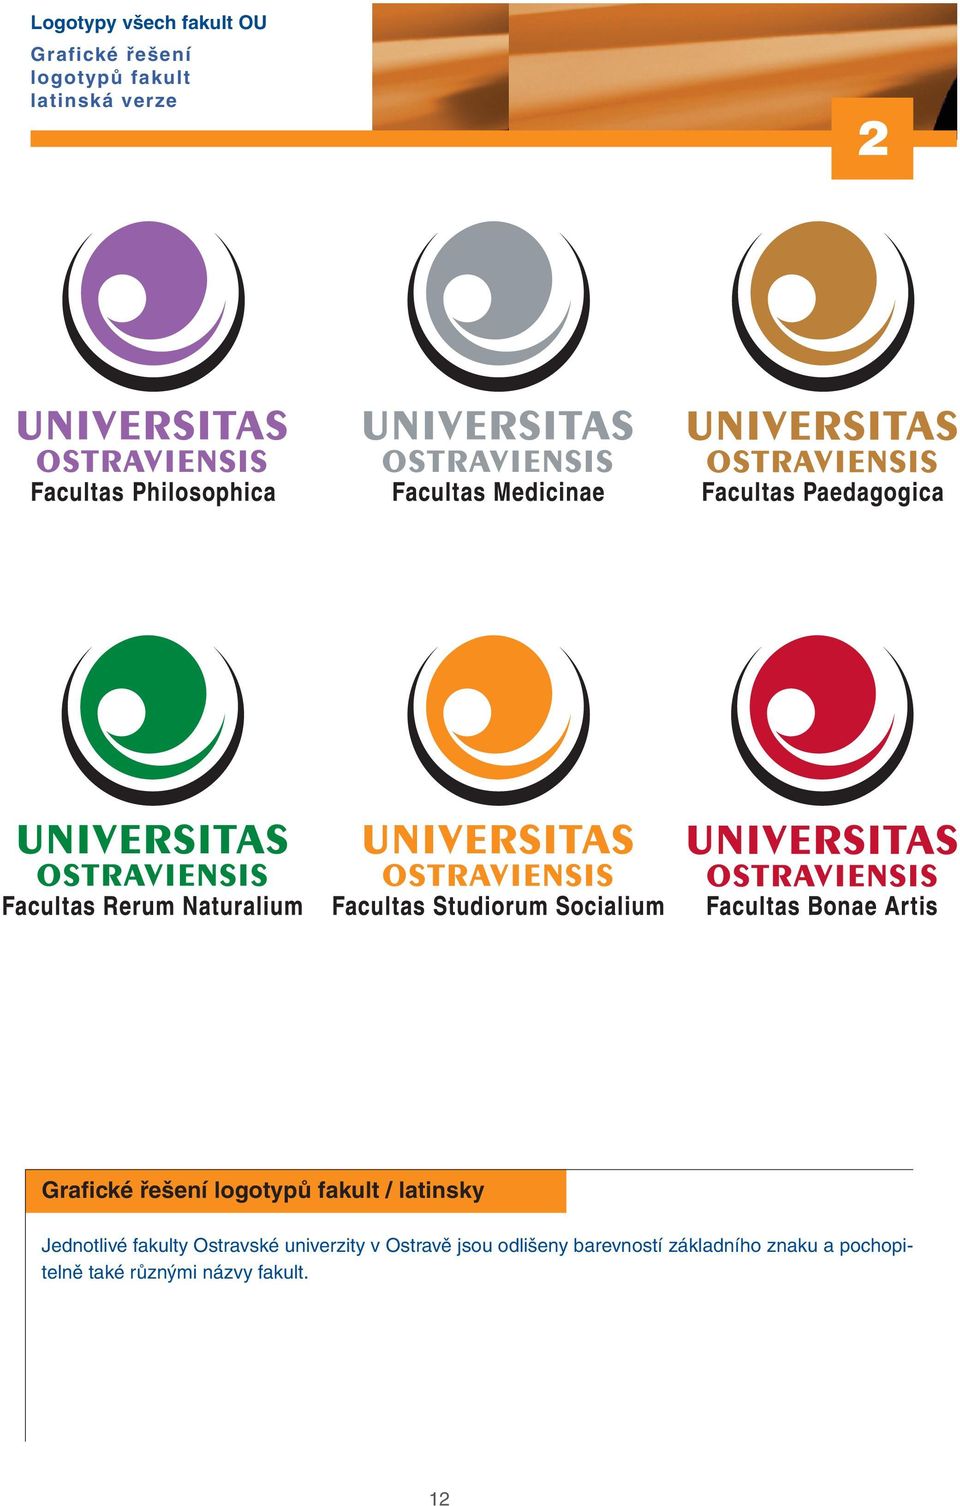 Jednotlivé fakulty Ostravské univerzity v Ostravě jsou